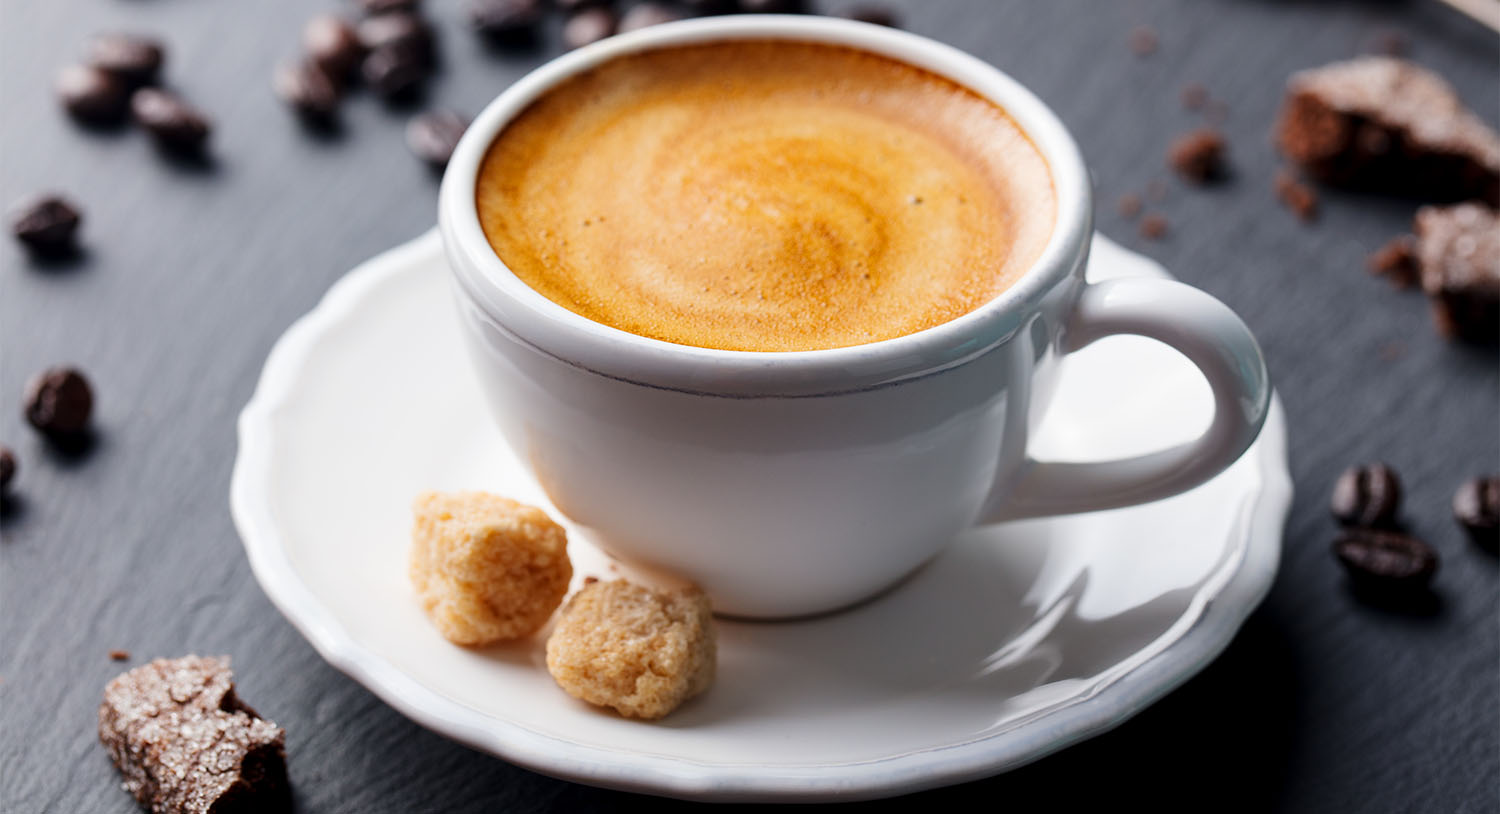 biała-filiżanka-kawy-ristretto-ciasteczka-gorąca-kawa-aromatyczna-kawa